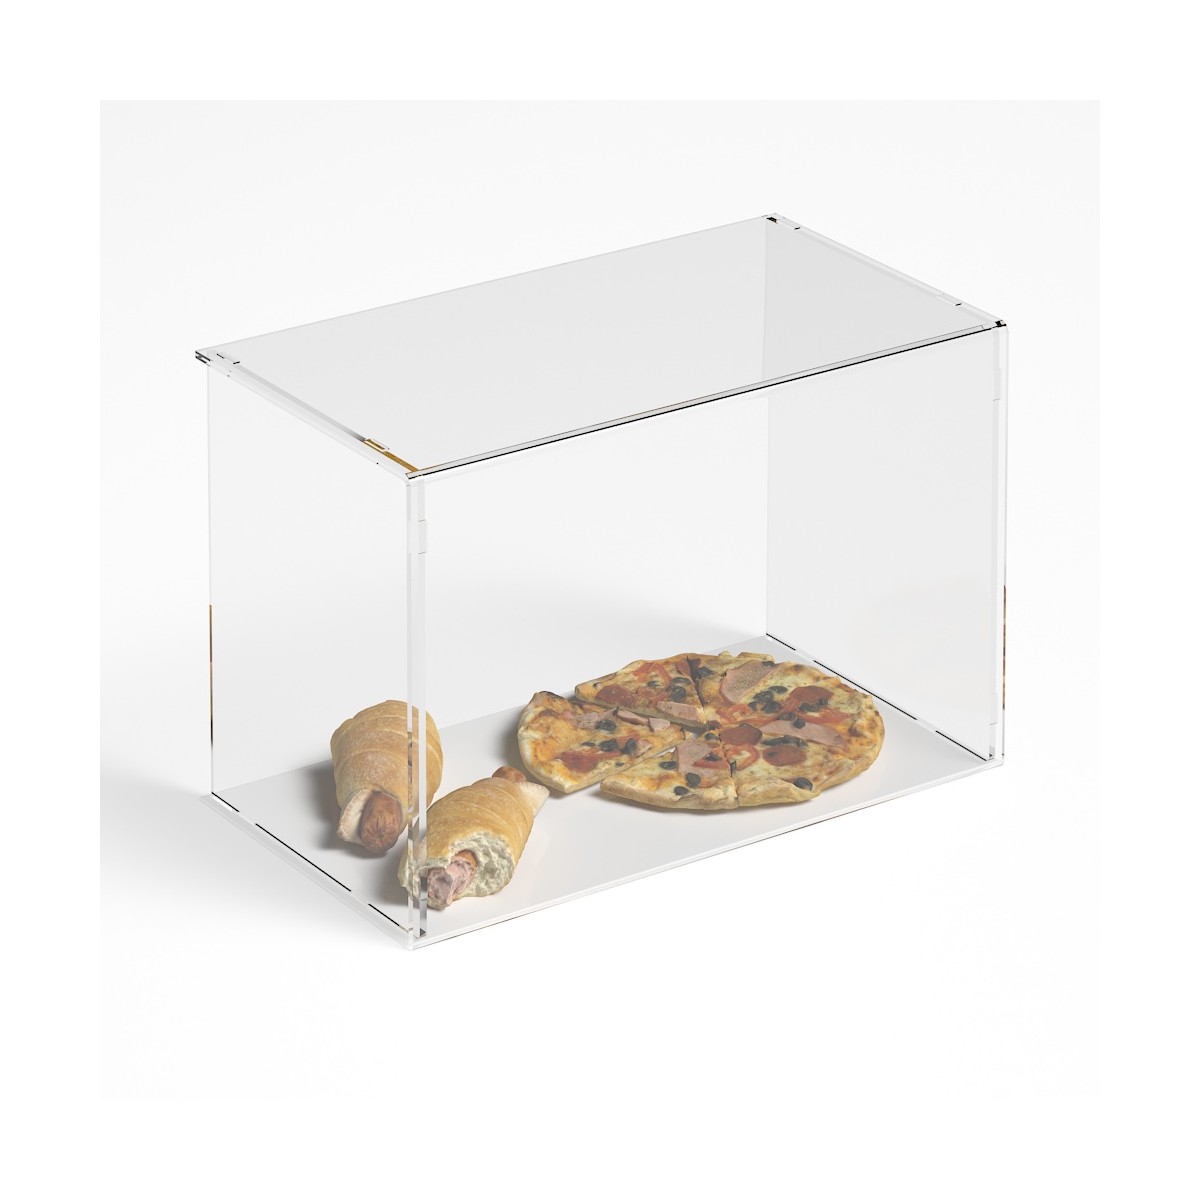 Parafiato parasputi in plexiglass trasparente per alimenti con